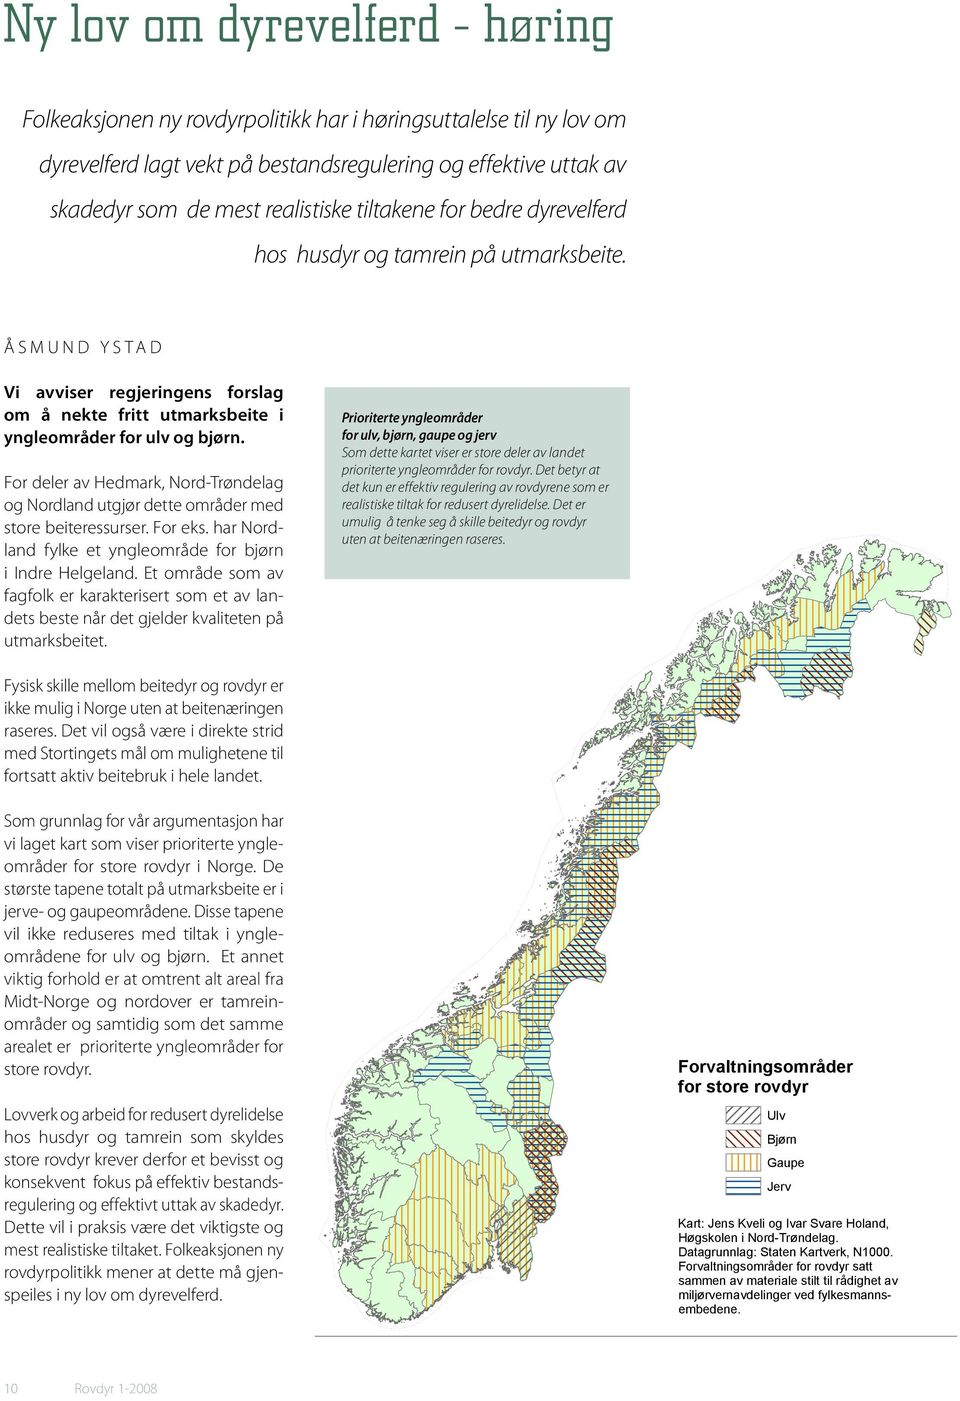 For deler av Hedmark, Nord-Trøndelag og Nordland utgjør dette områder med store beiteressurser. For eks. har Nordland fylke et yngleområde for bjørn i Indre Helgeland.